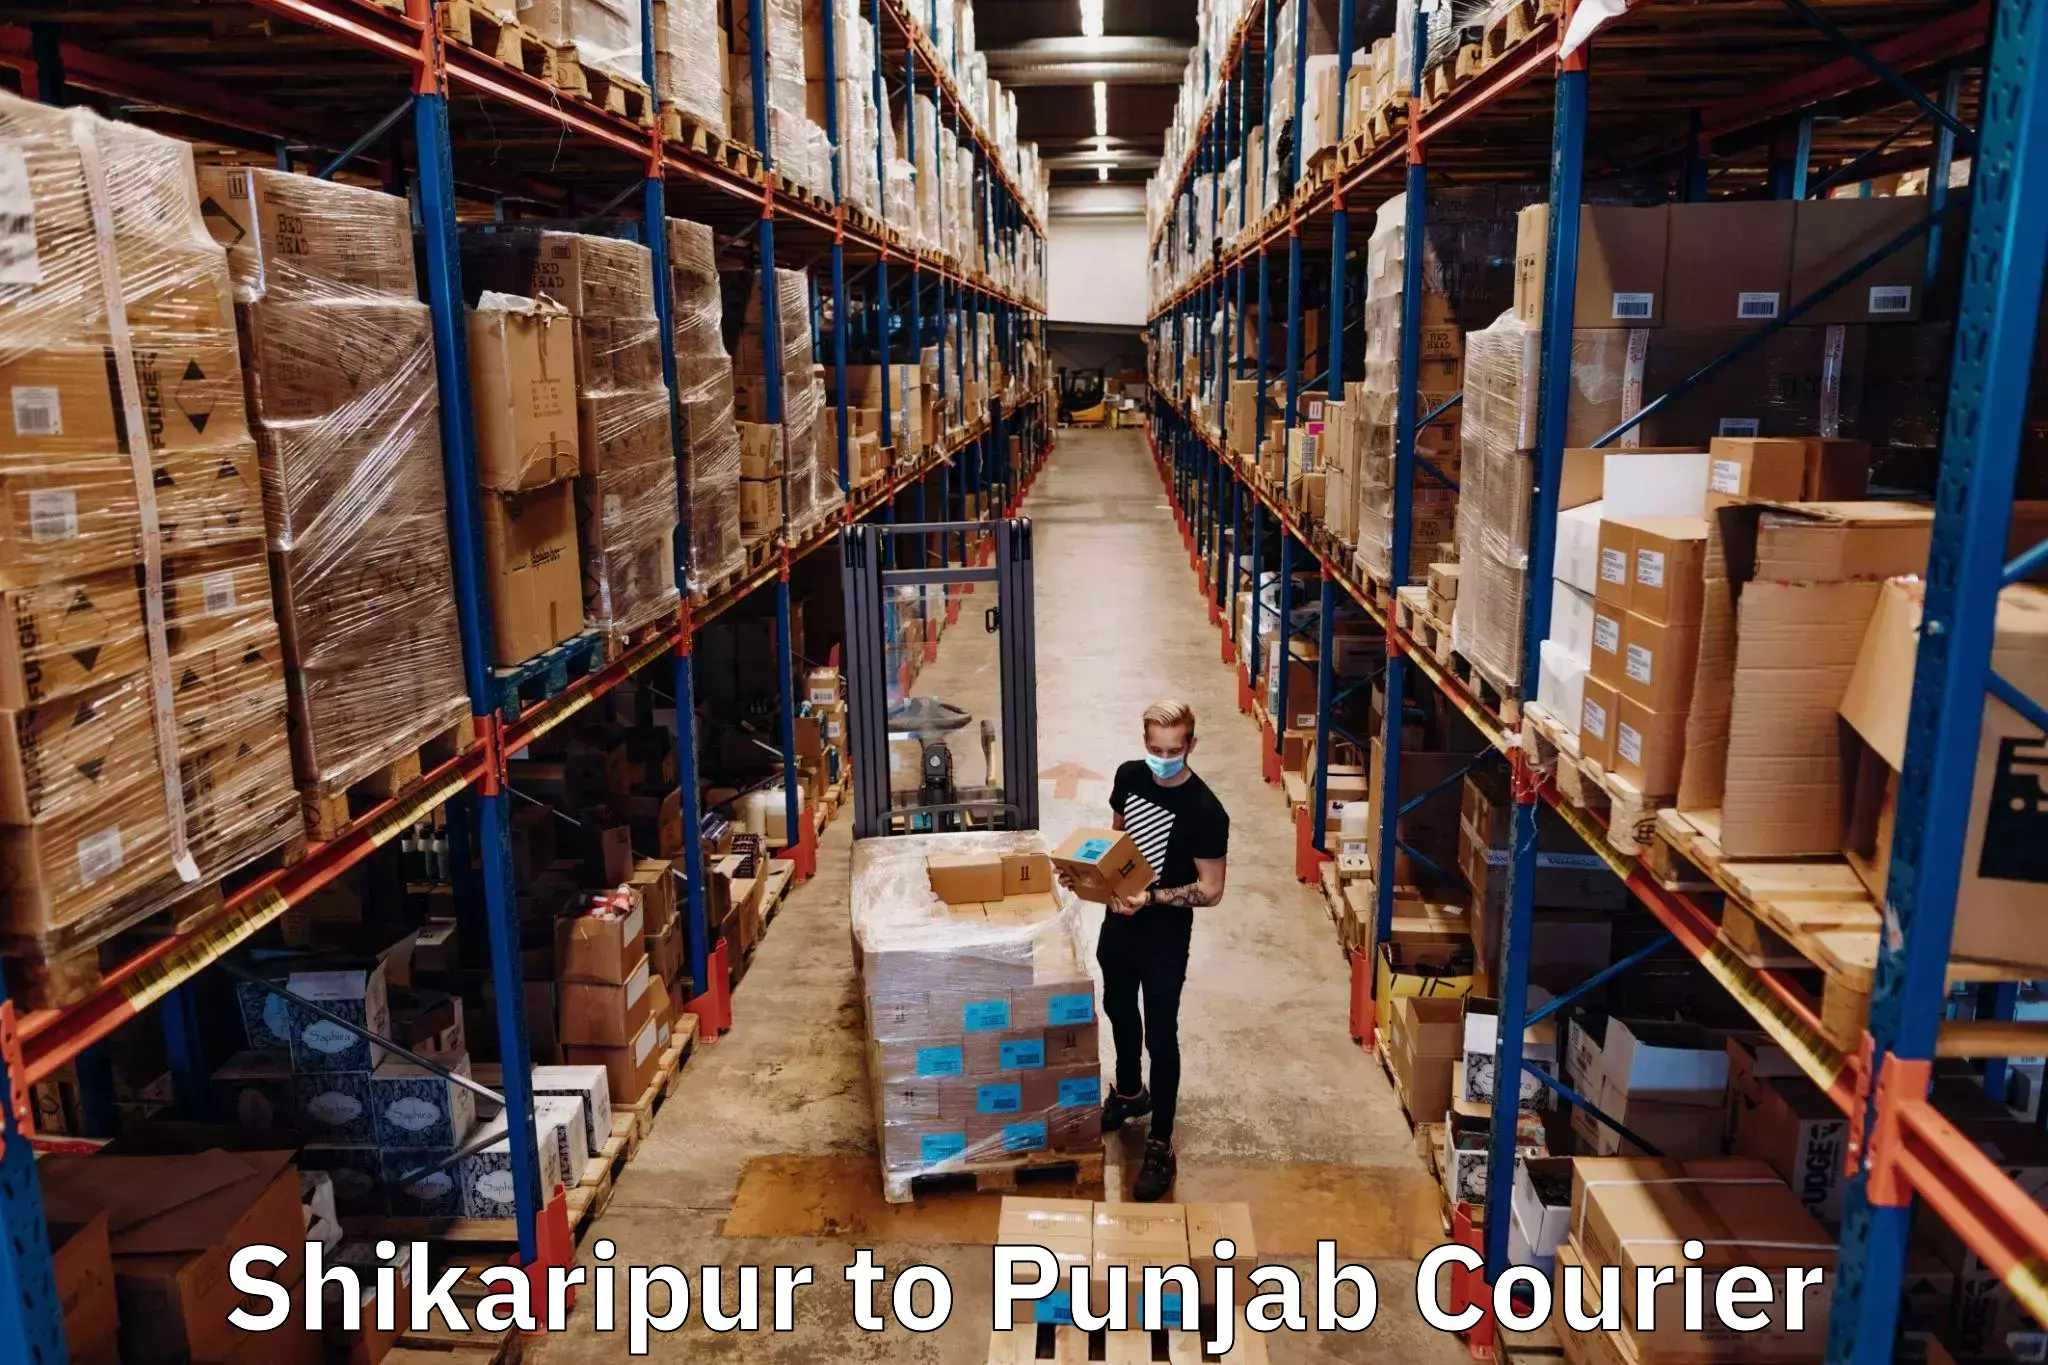 Professional courier handling Shikaripur to Punjab